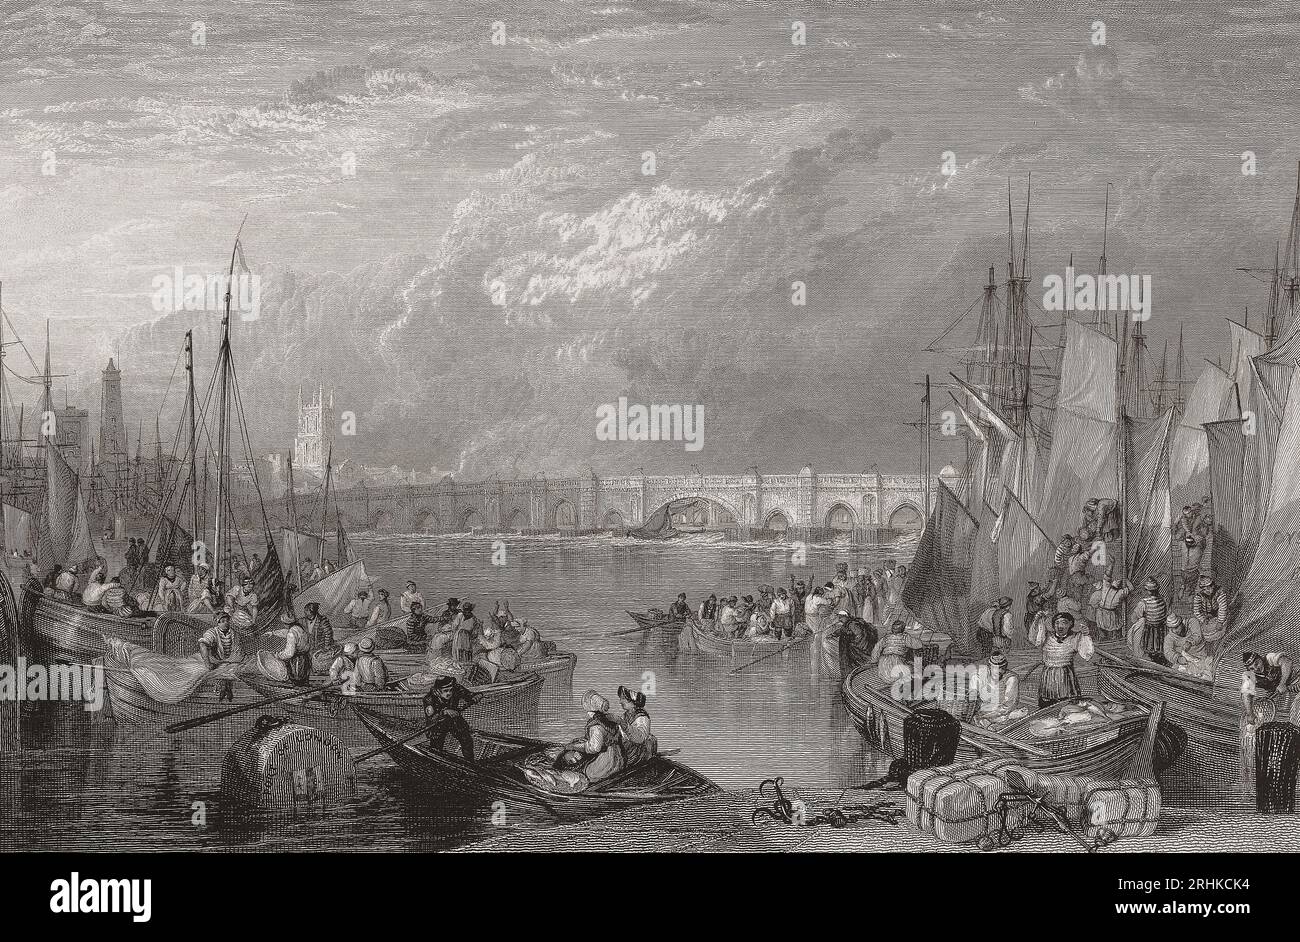 London Bridge im frühen 19. Jahrhundert. Aus einem Kupferstich von Edward Goodall nach einem Werk von J.M.W. Turner. Stockfoto